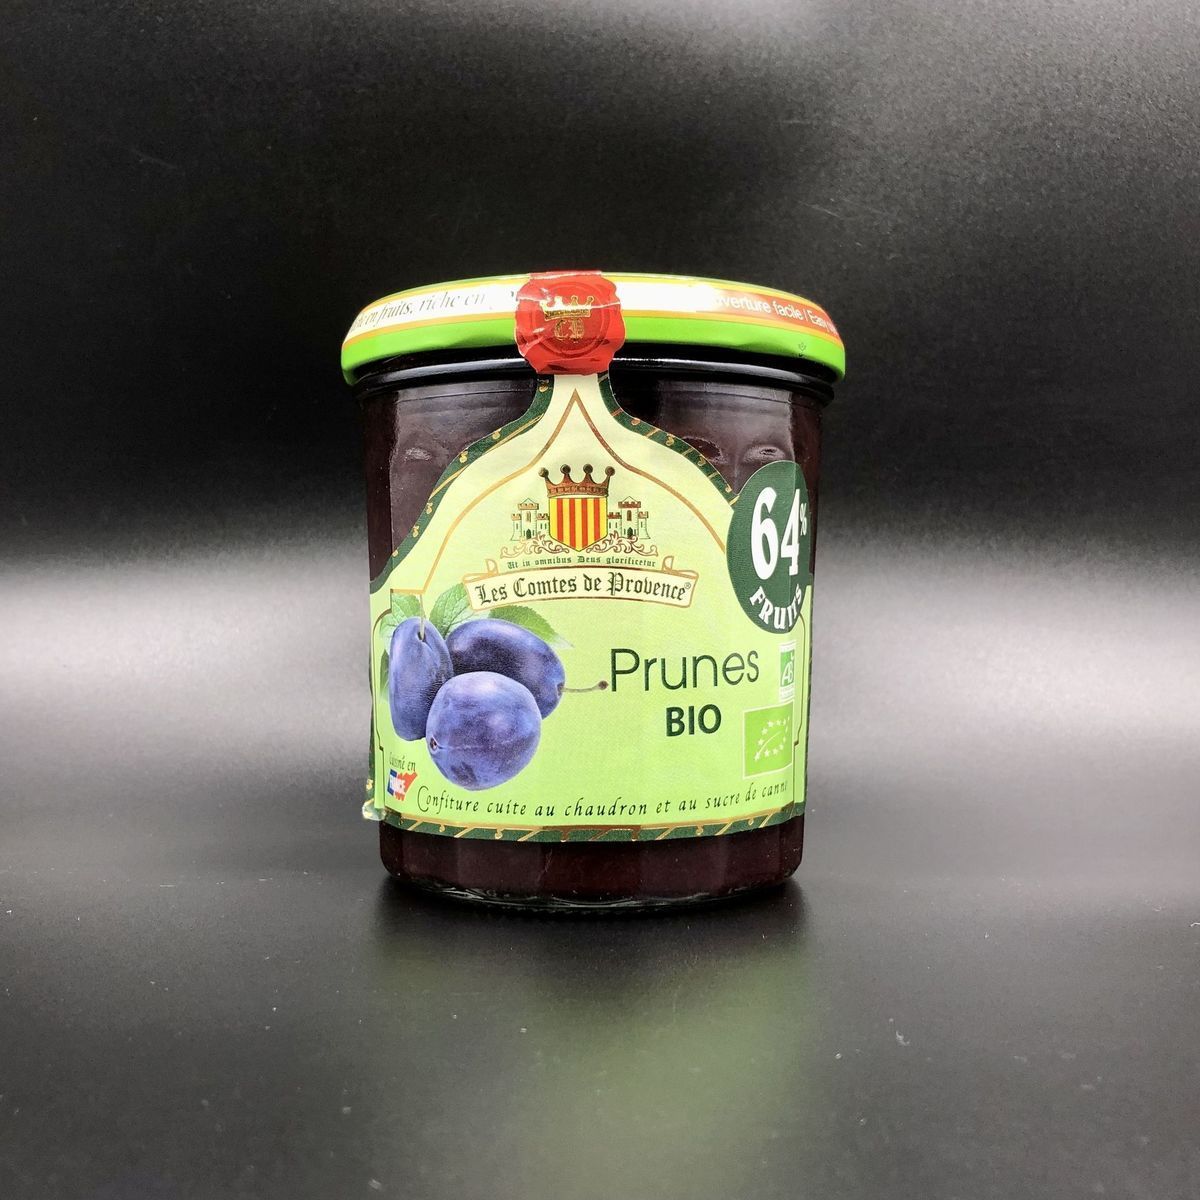 Джем Les Comtes de Provence из сливы Organic 350г, 64% фруктов